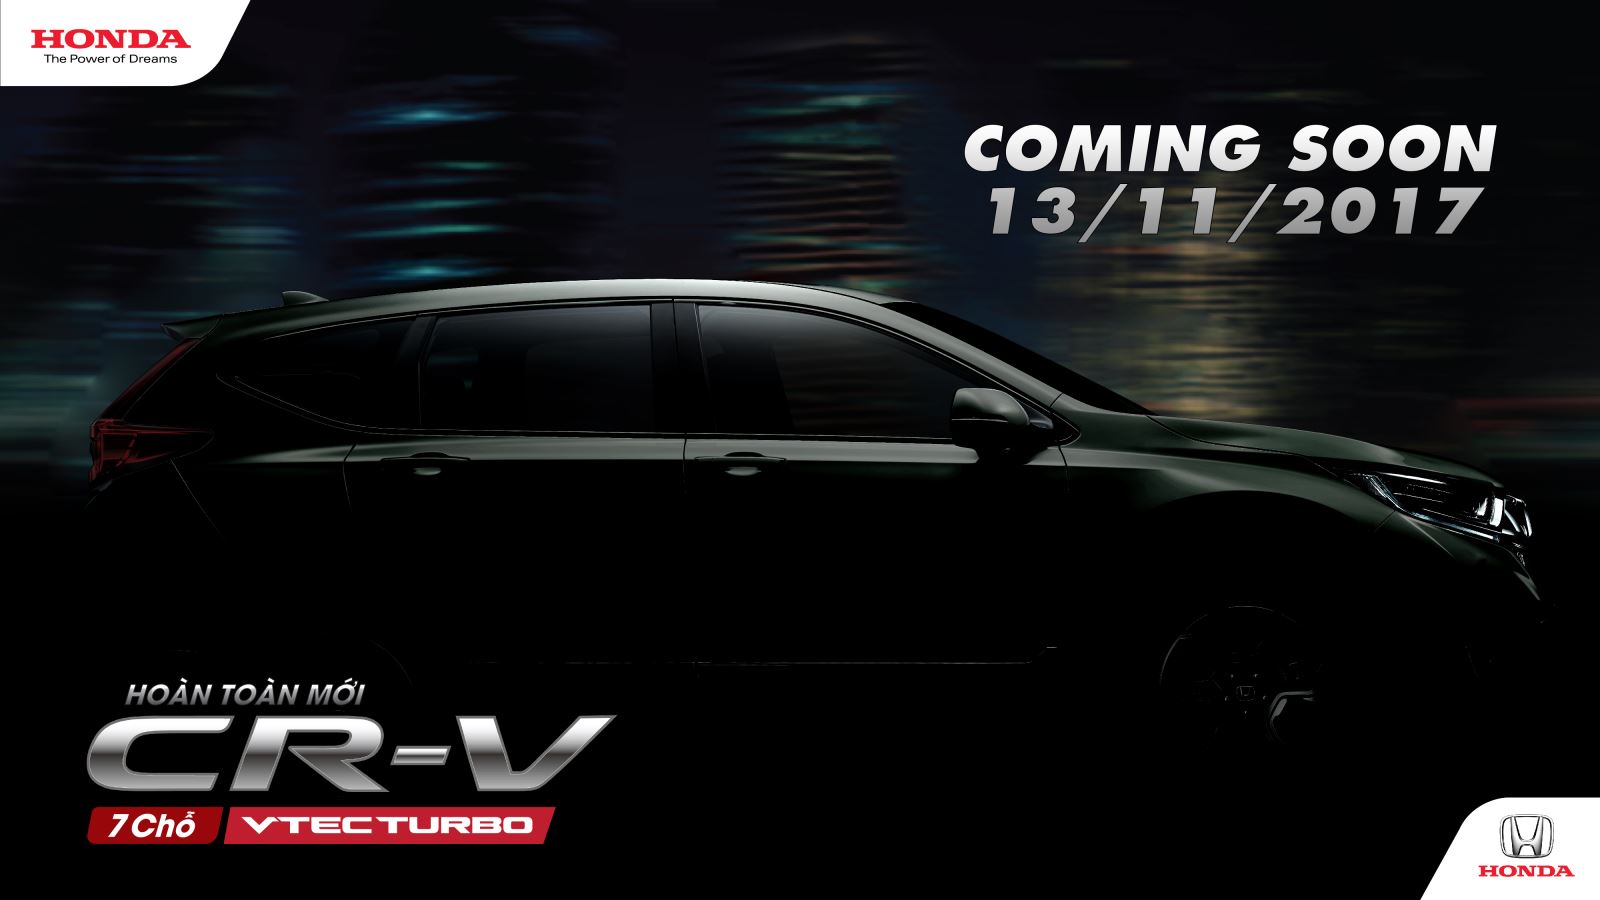 Honda CR-V thế hệ thứ 5 hoàn toàn mới sắp được ra mắt